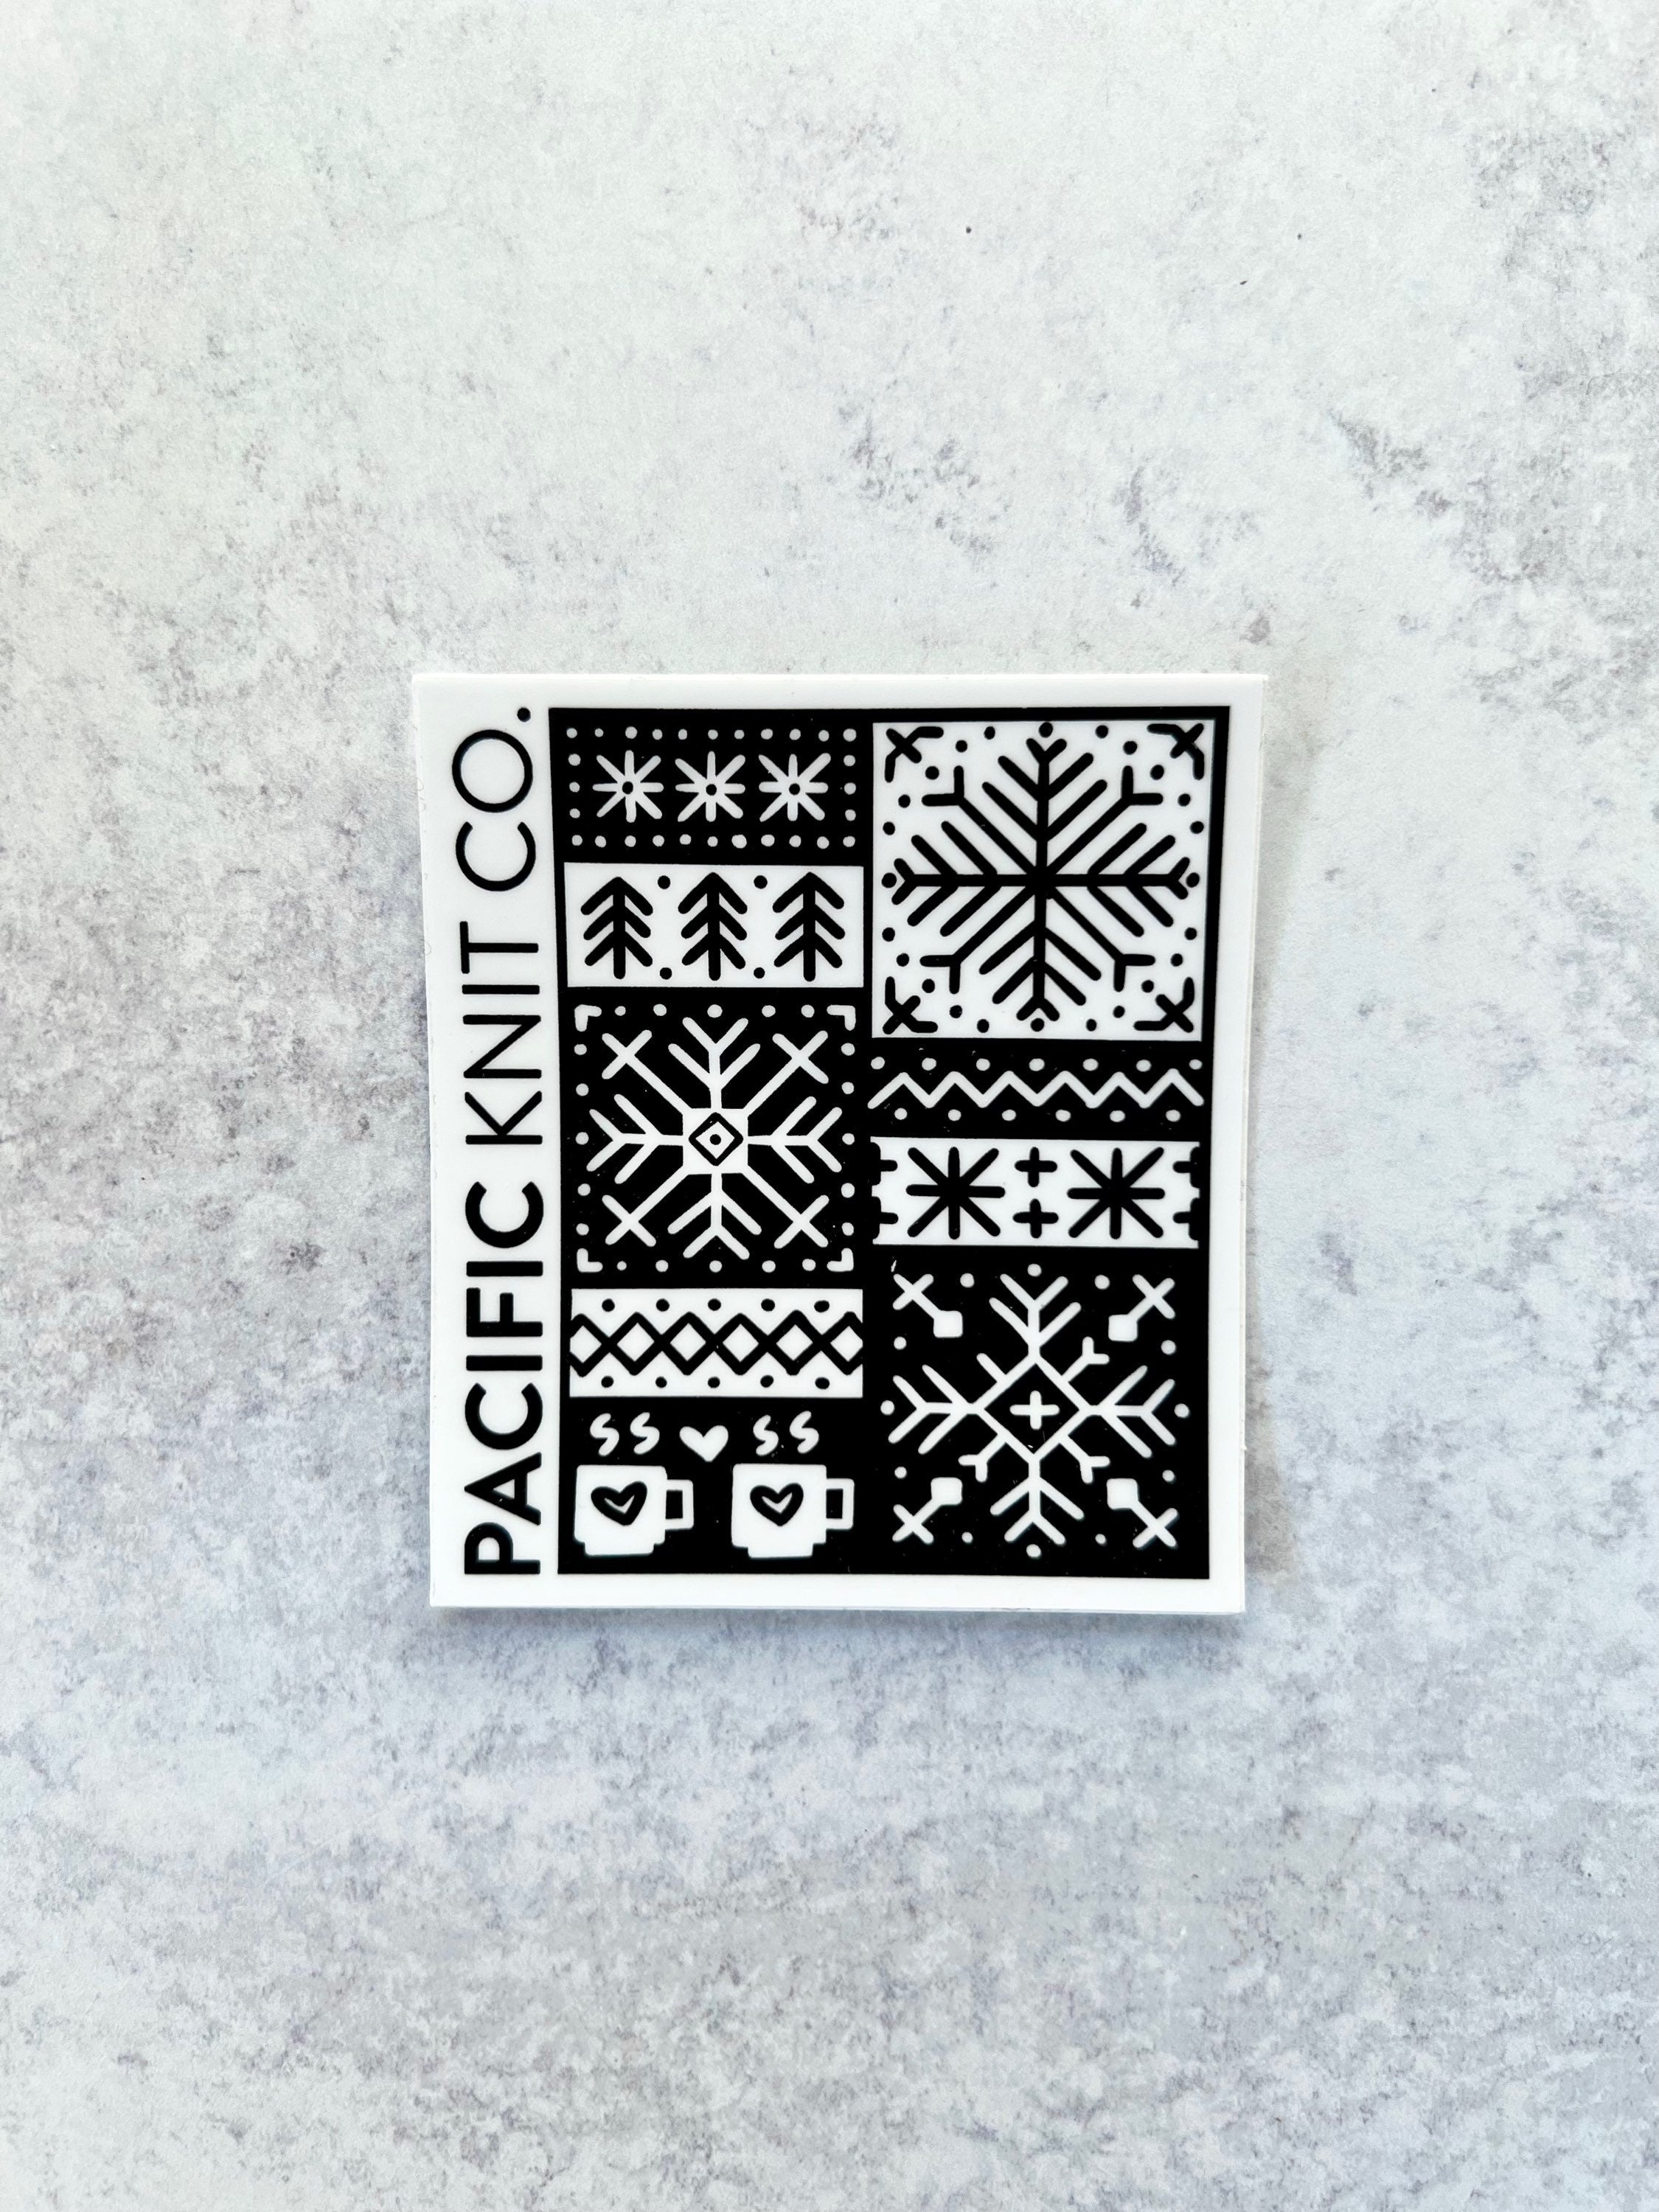 Sticker - Winter Doodle - Black - 3 x 3 in